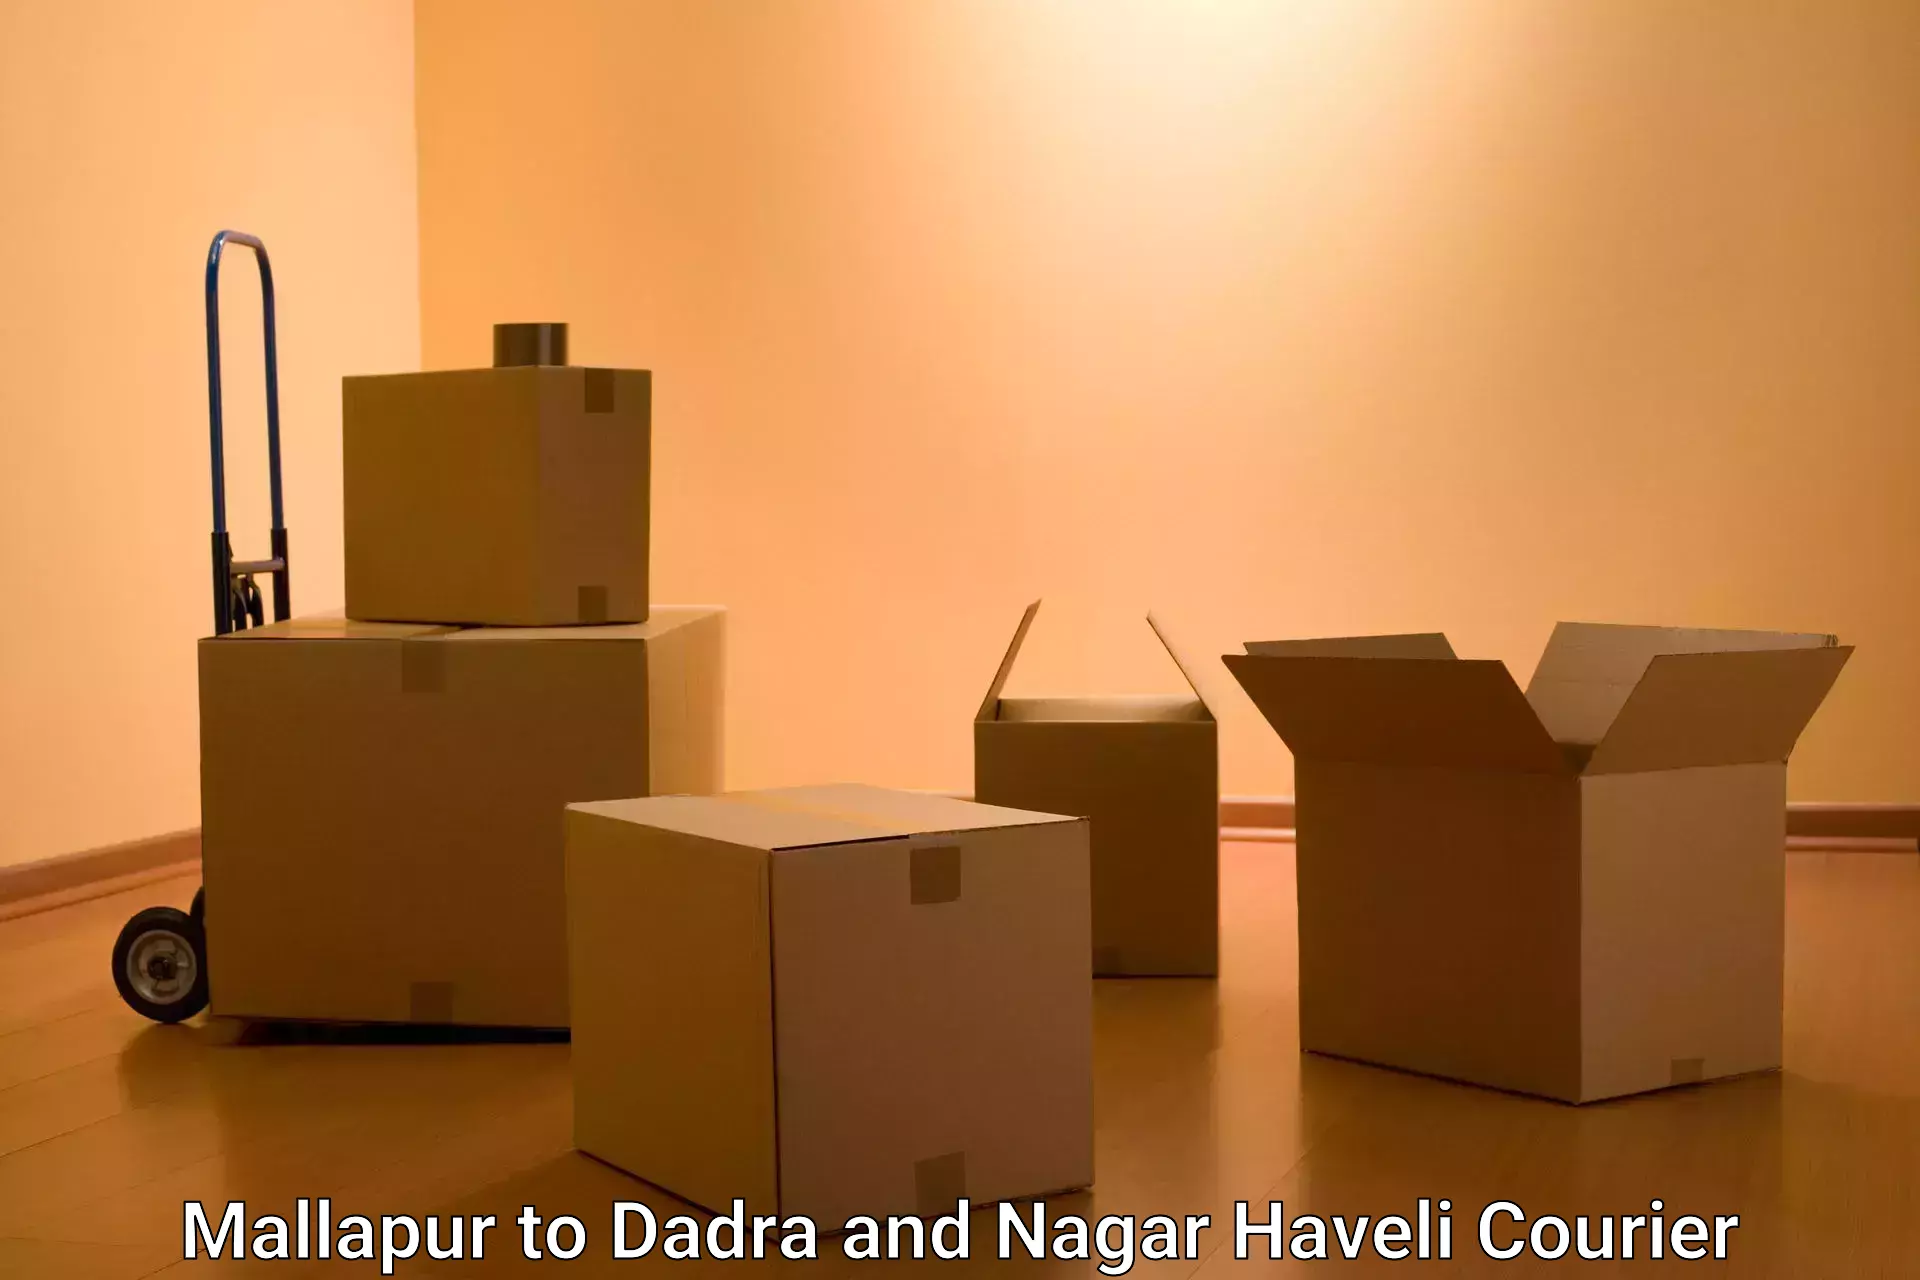 On-demand shipping options Mallapur to Dadra and Nagar Haveli